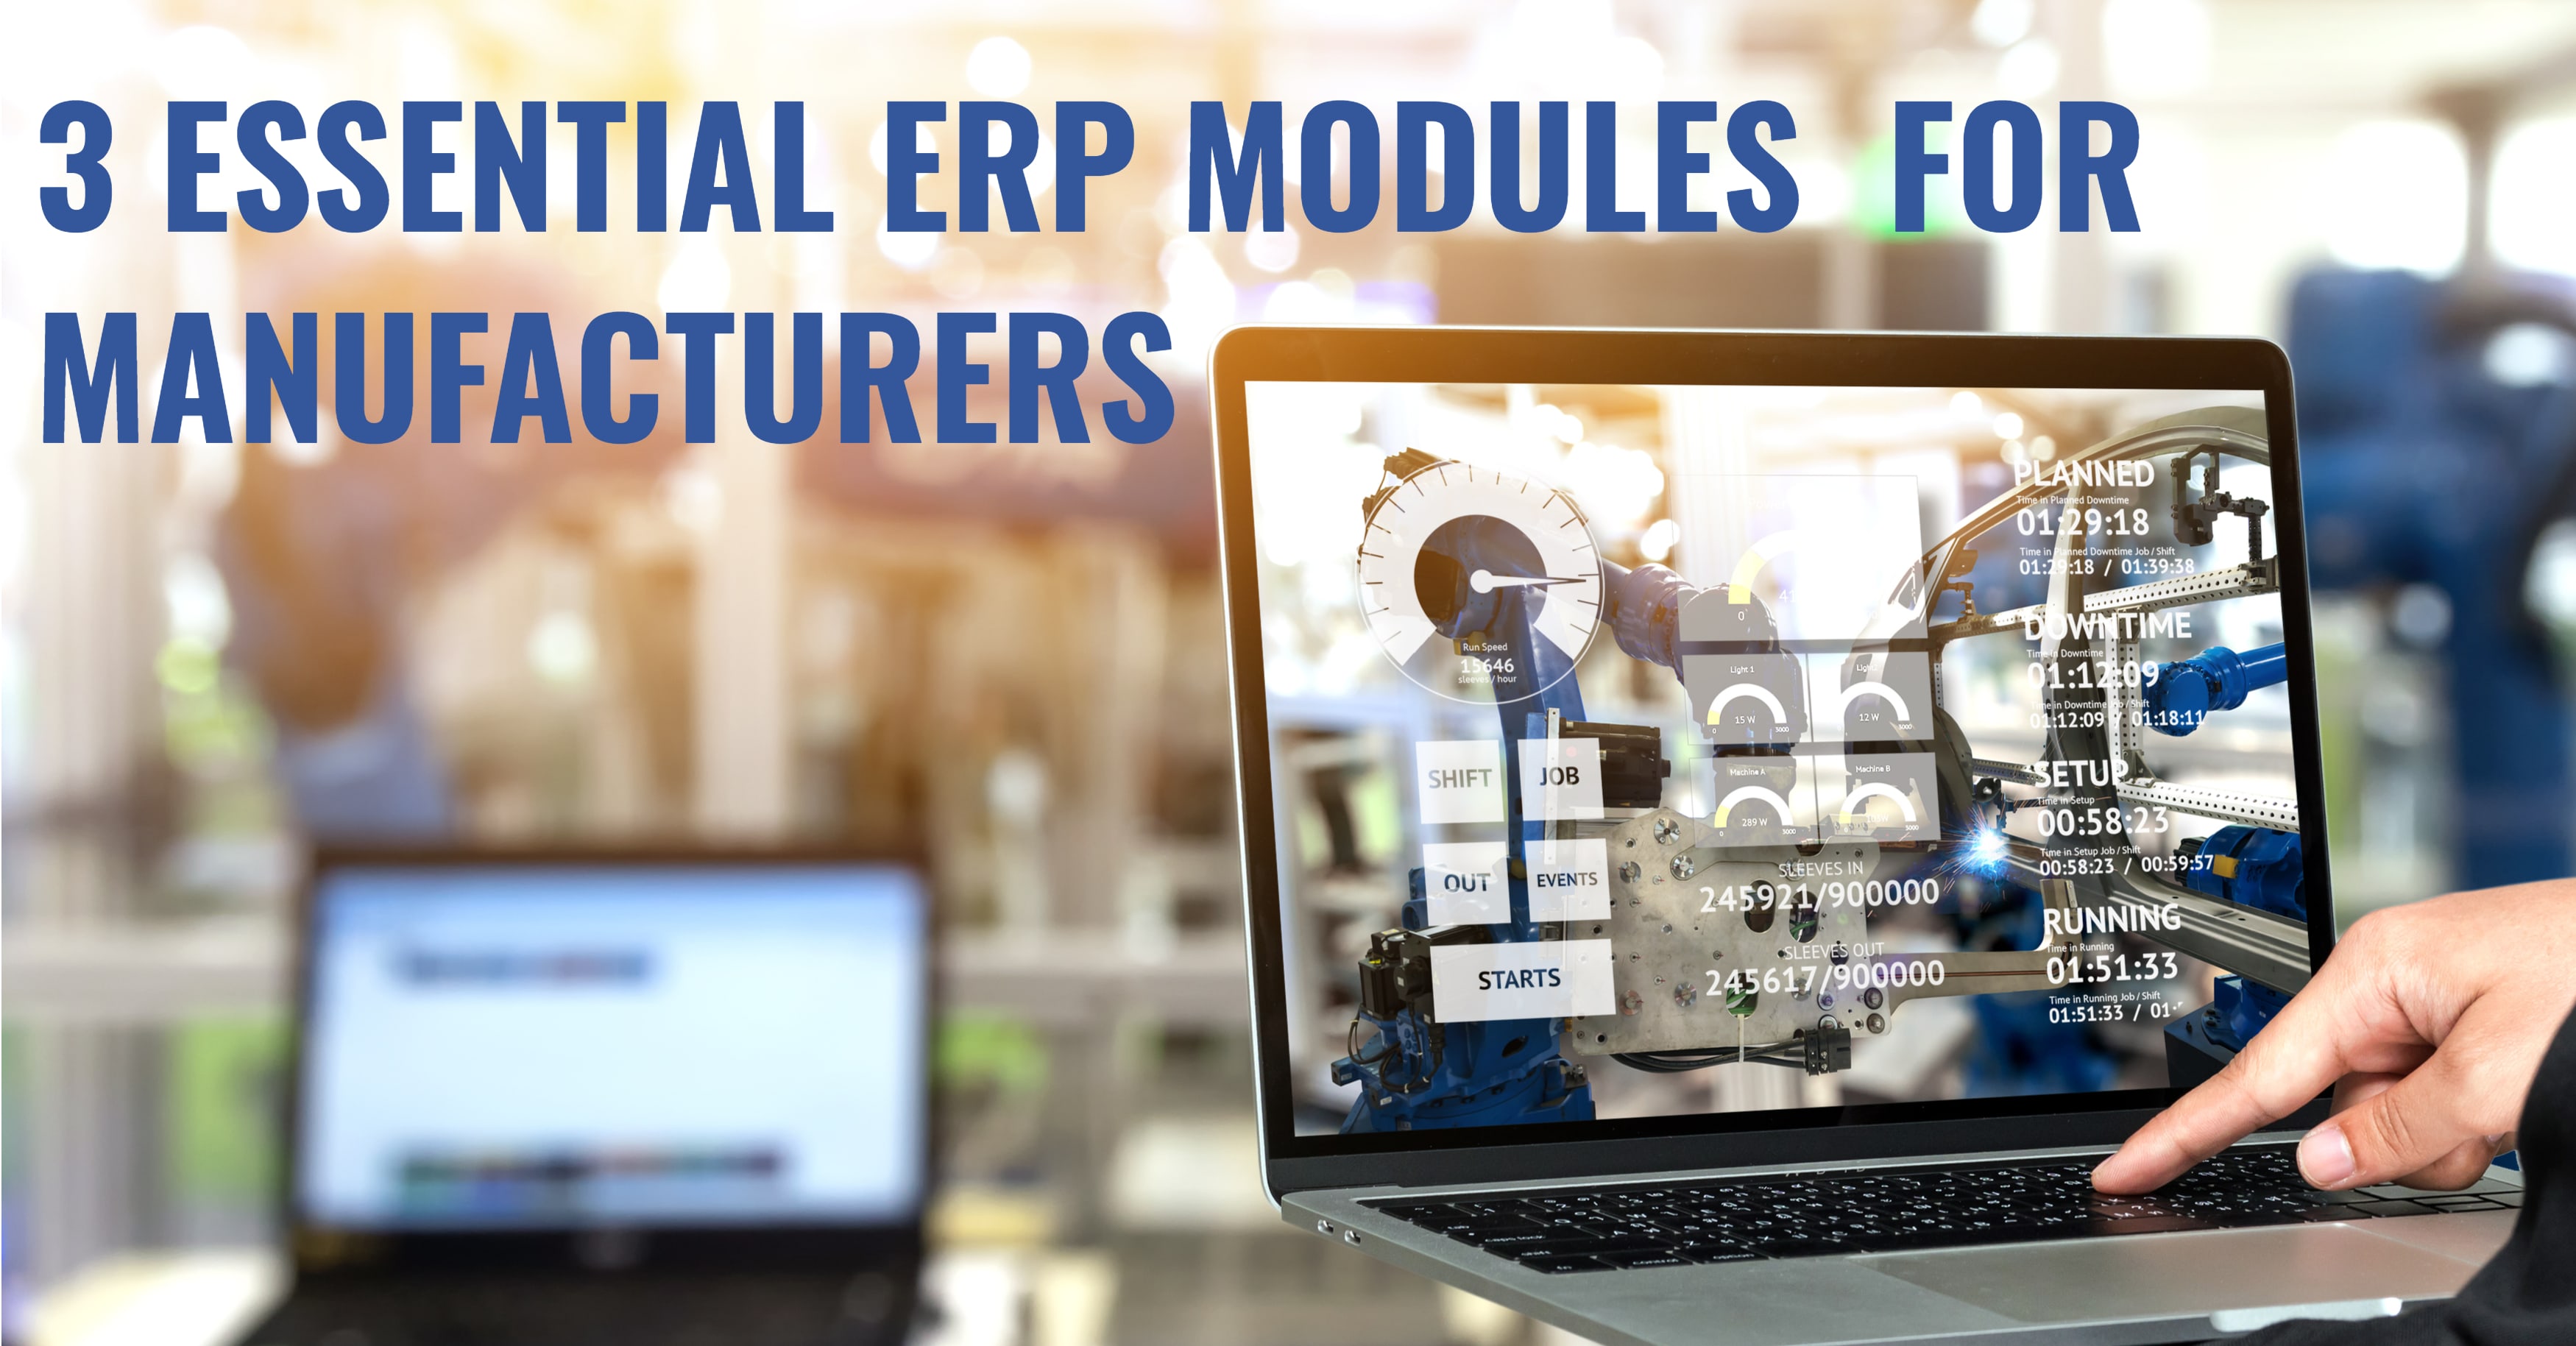 ERP Manufacturing Modules